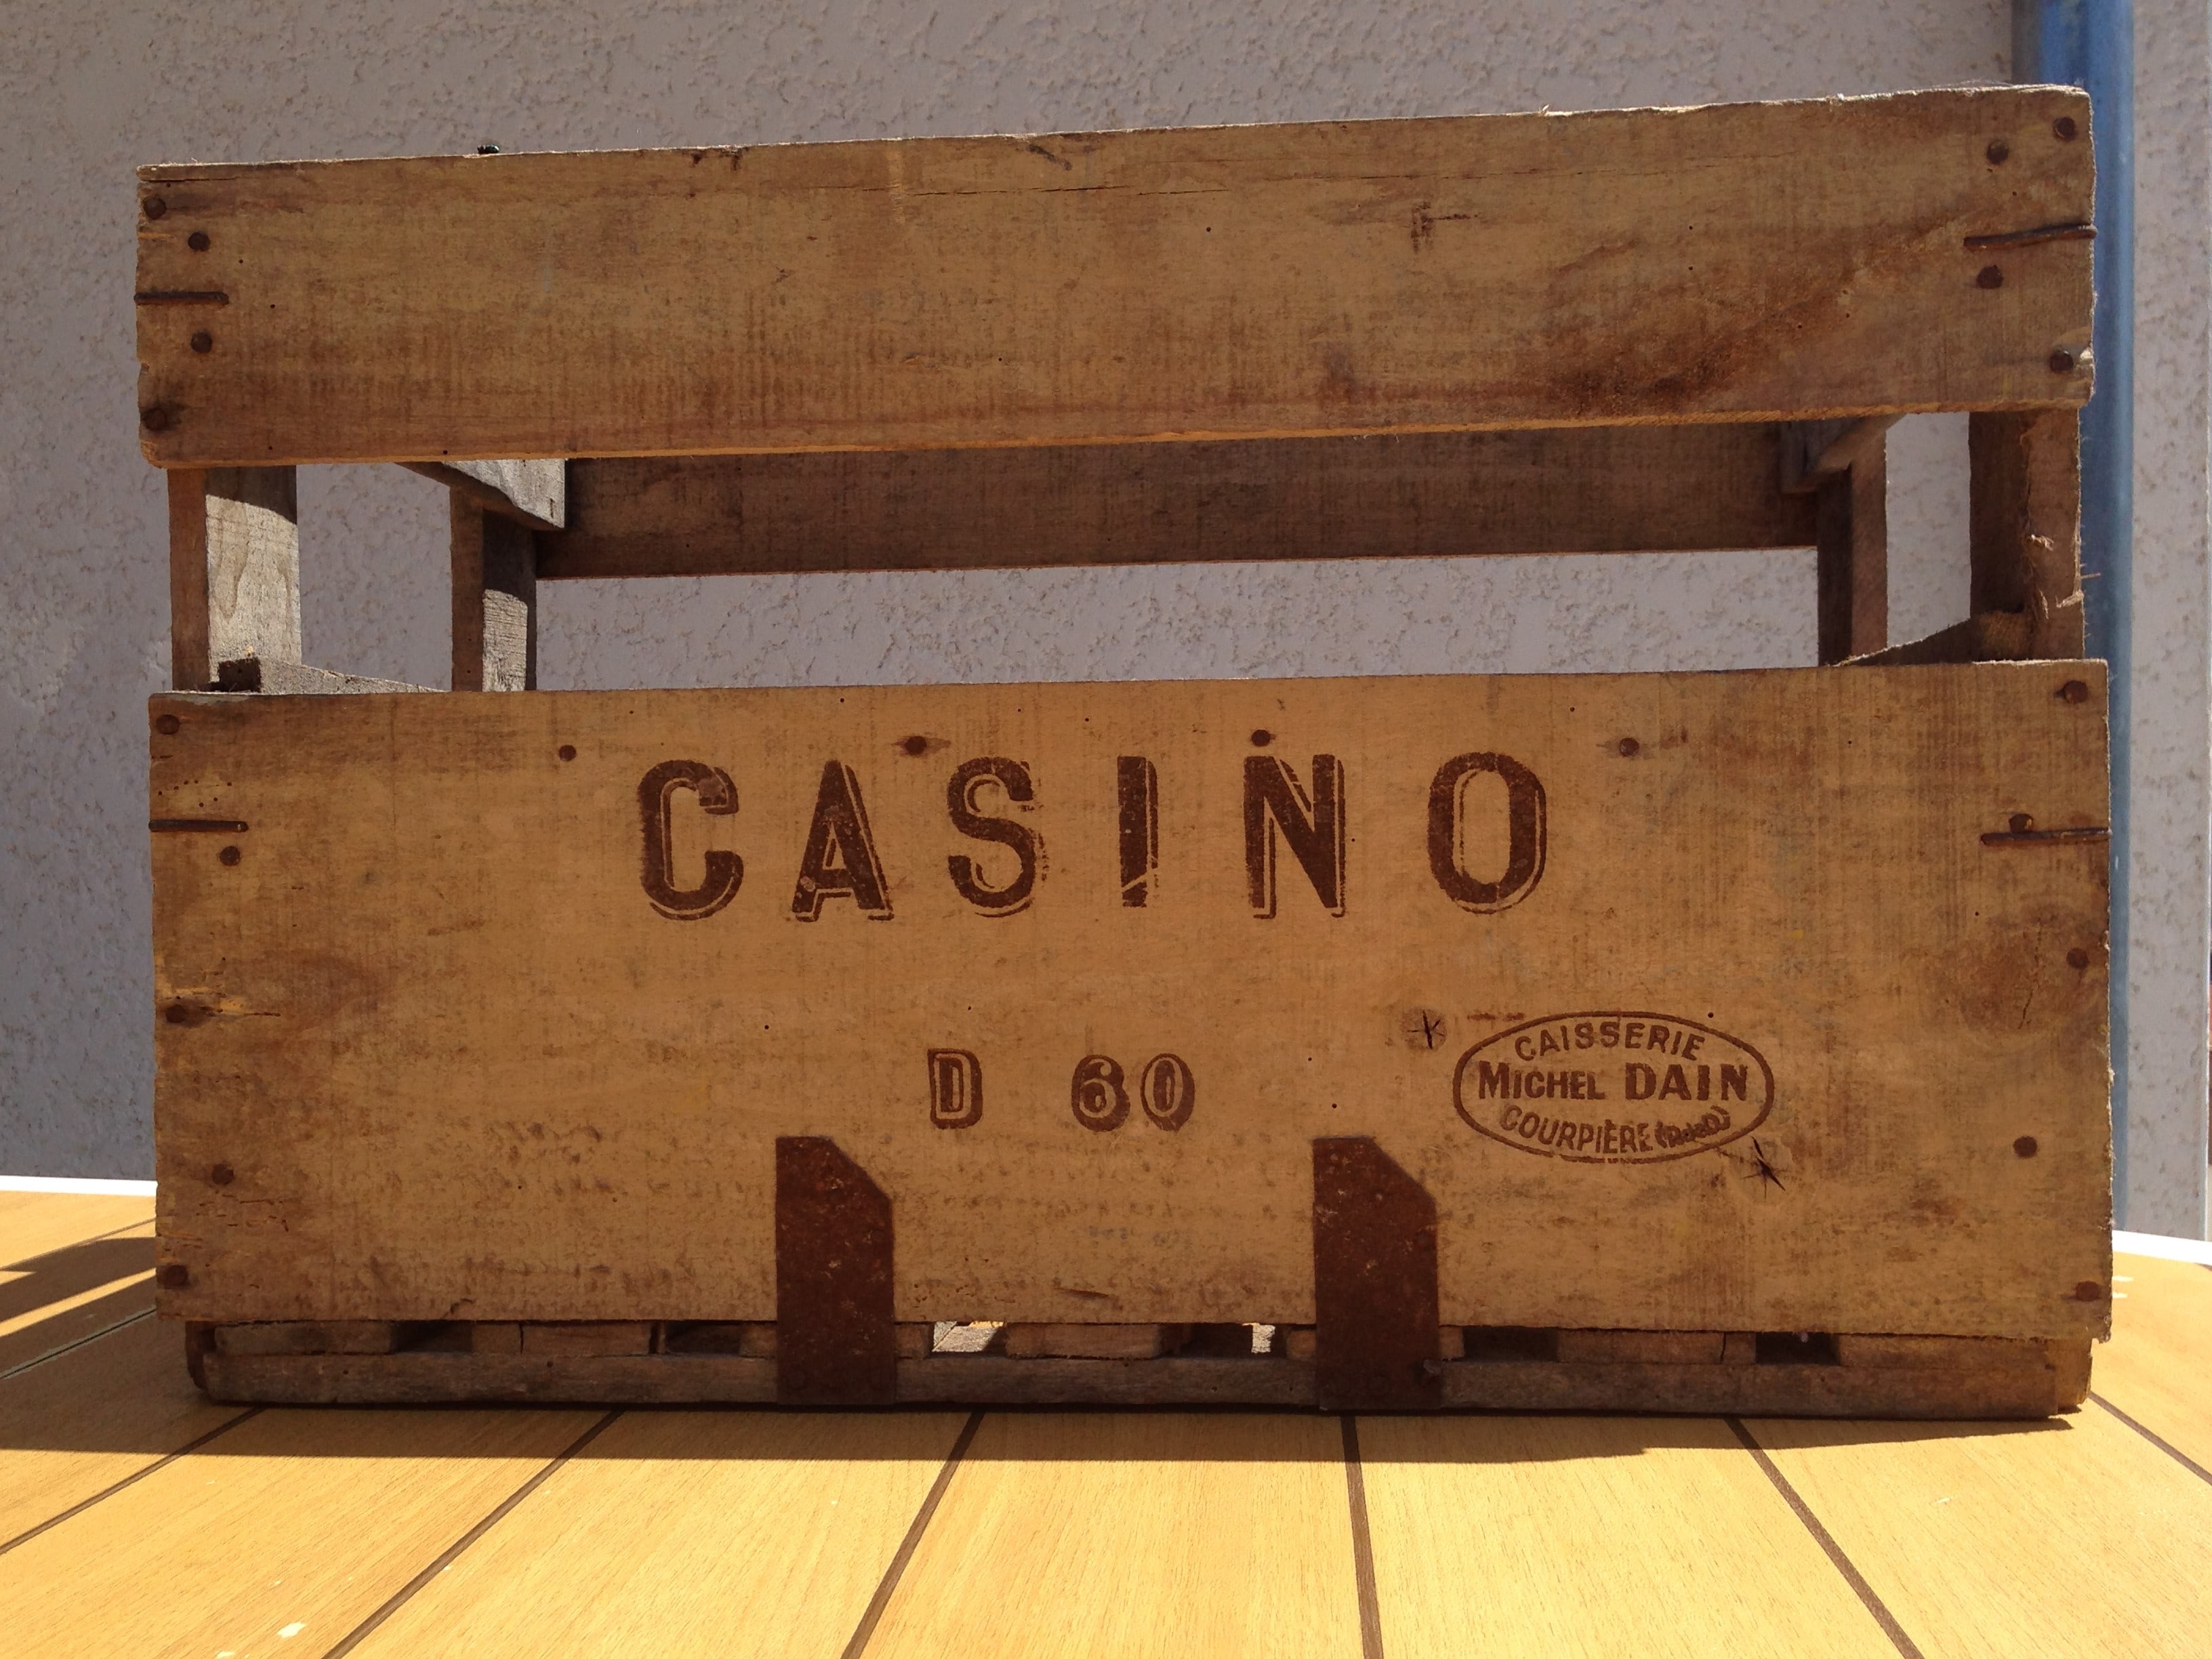 Cagette Casino